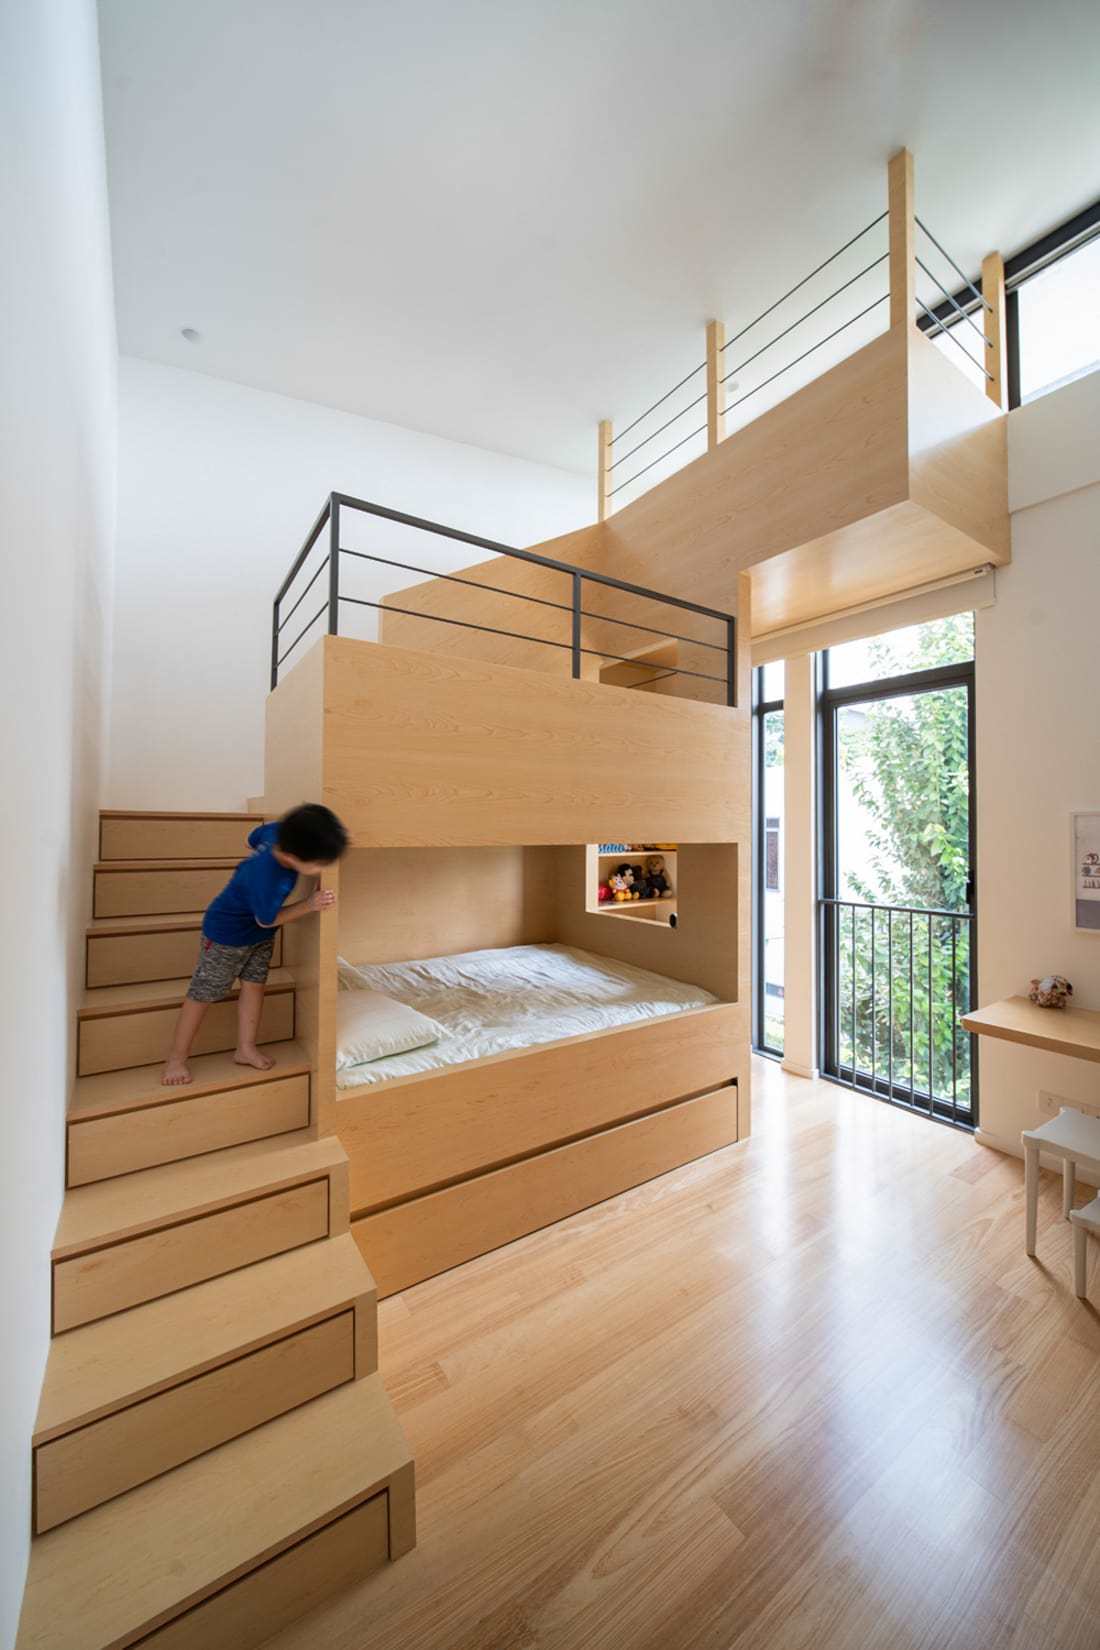 kids room / Fabian Tan Architect